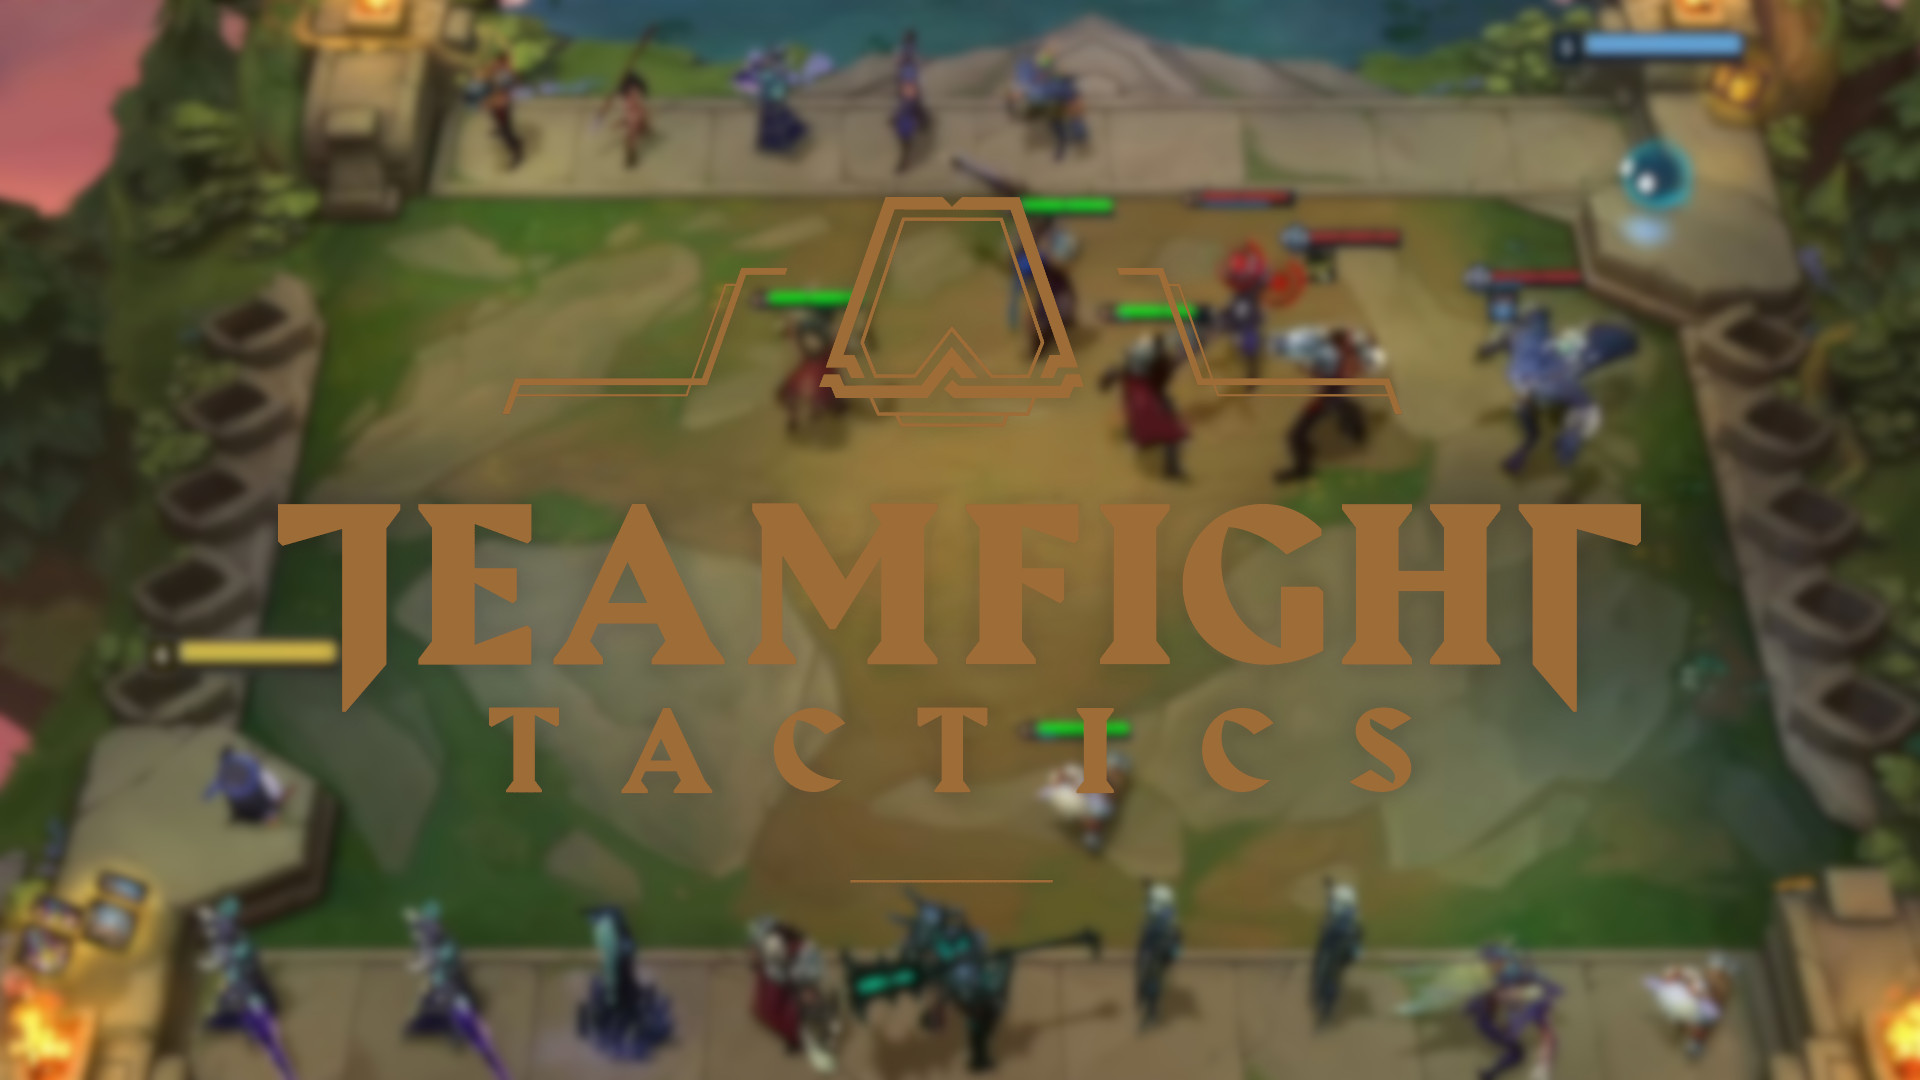 teamfight tactics